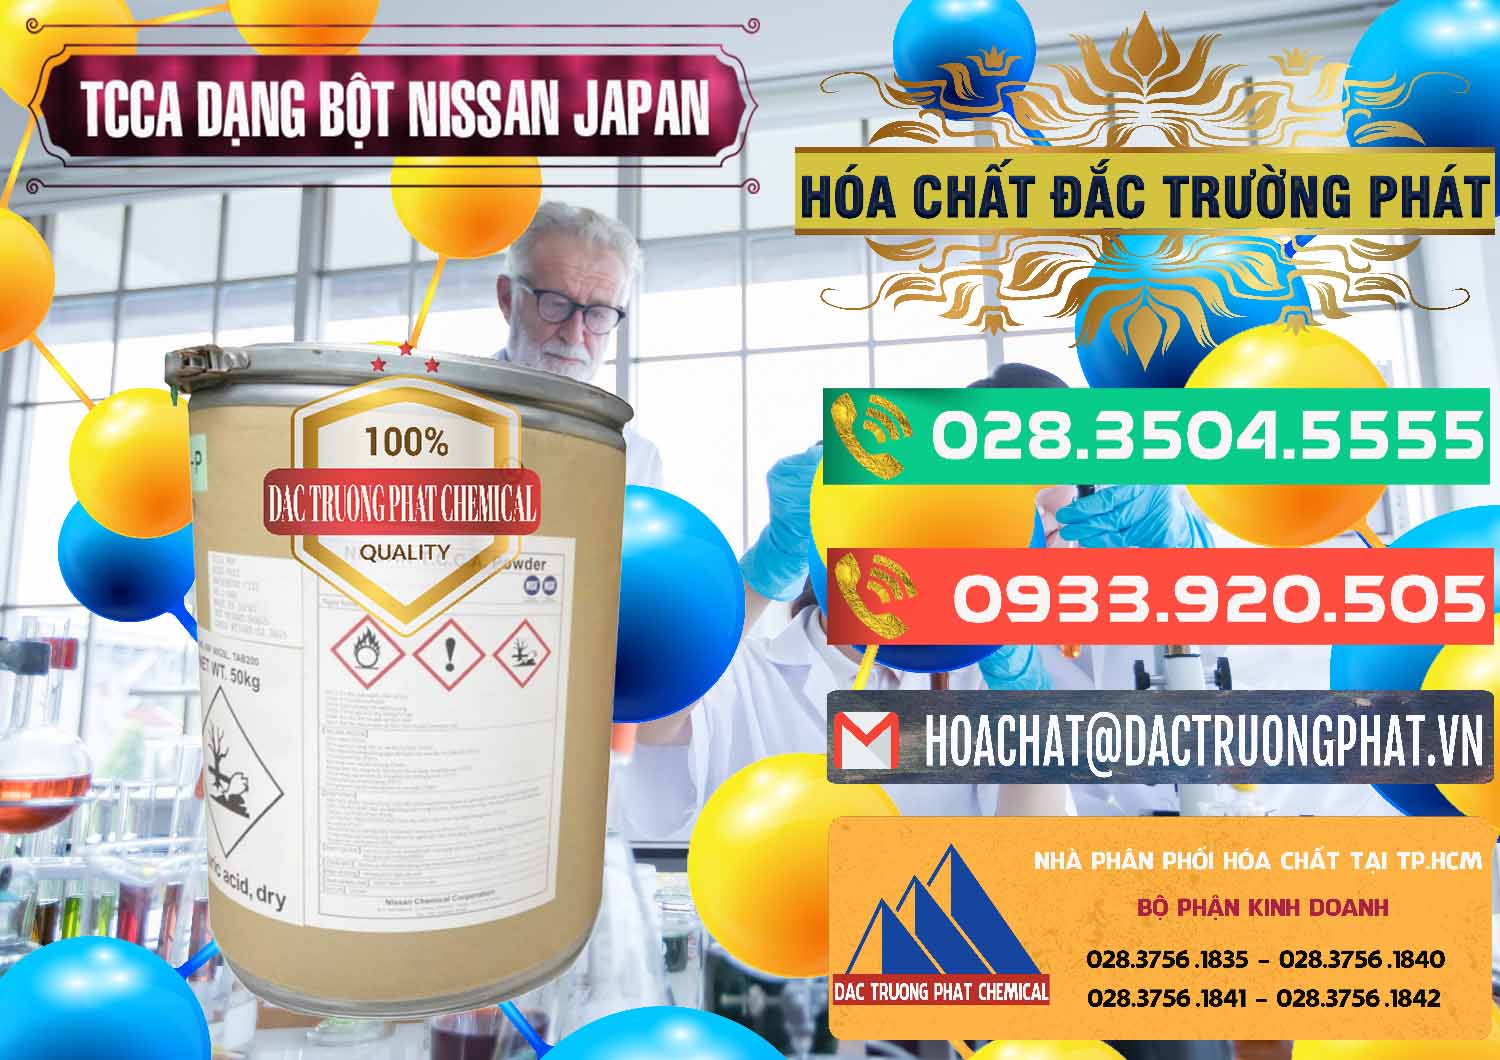 Đơn vị cung cấp và bán TCCA - Acid Trichloroisocyanuric 90% Dạng Bột Nissan Nhật Bản Japan - 0375 - Chuyên cung cấp - bán hóa chất tại TP.HCM - congtyhoachat.com.vn